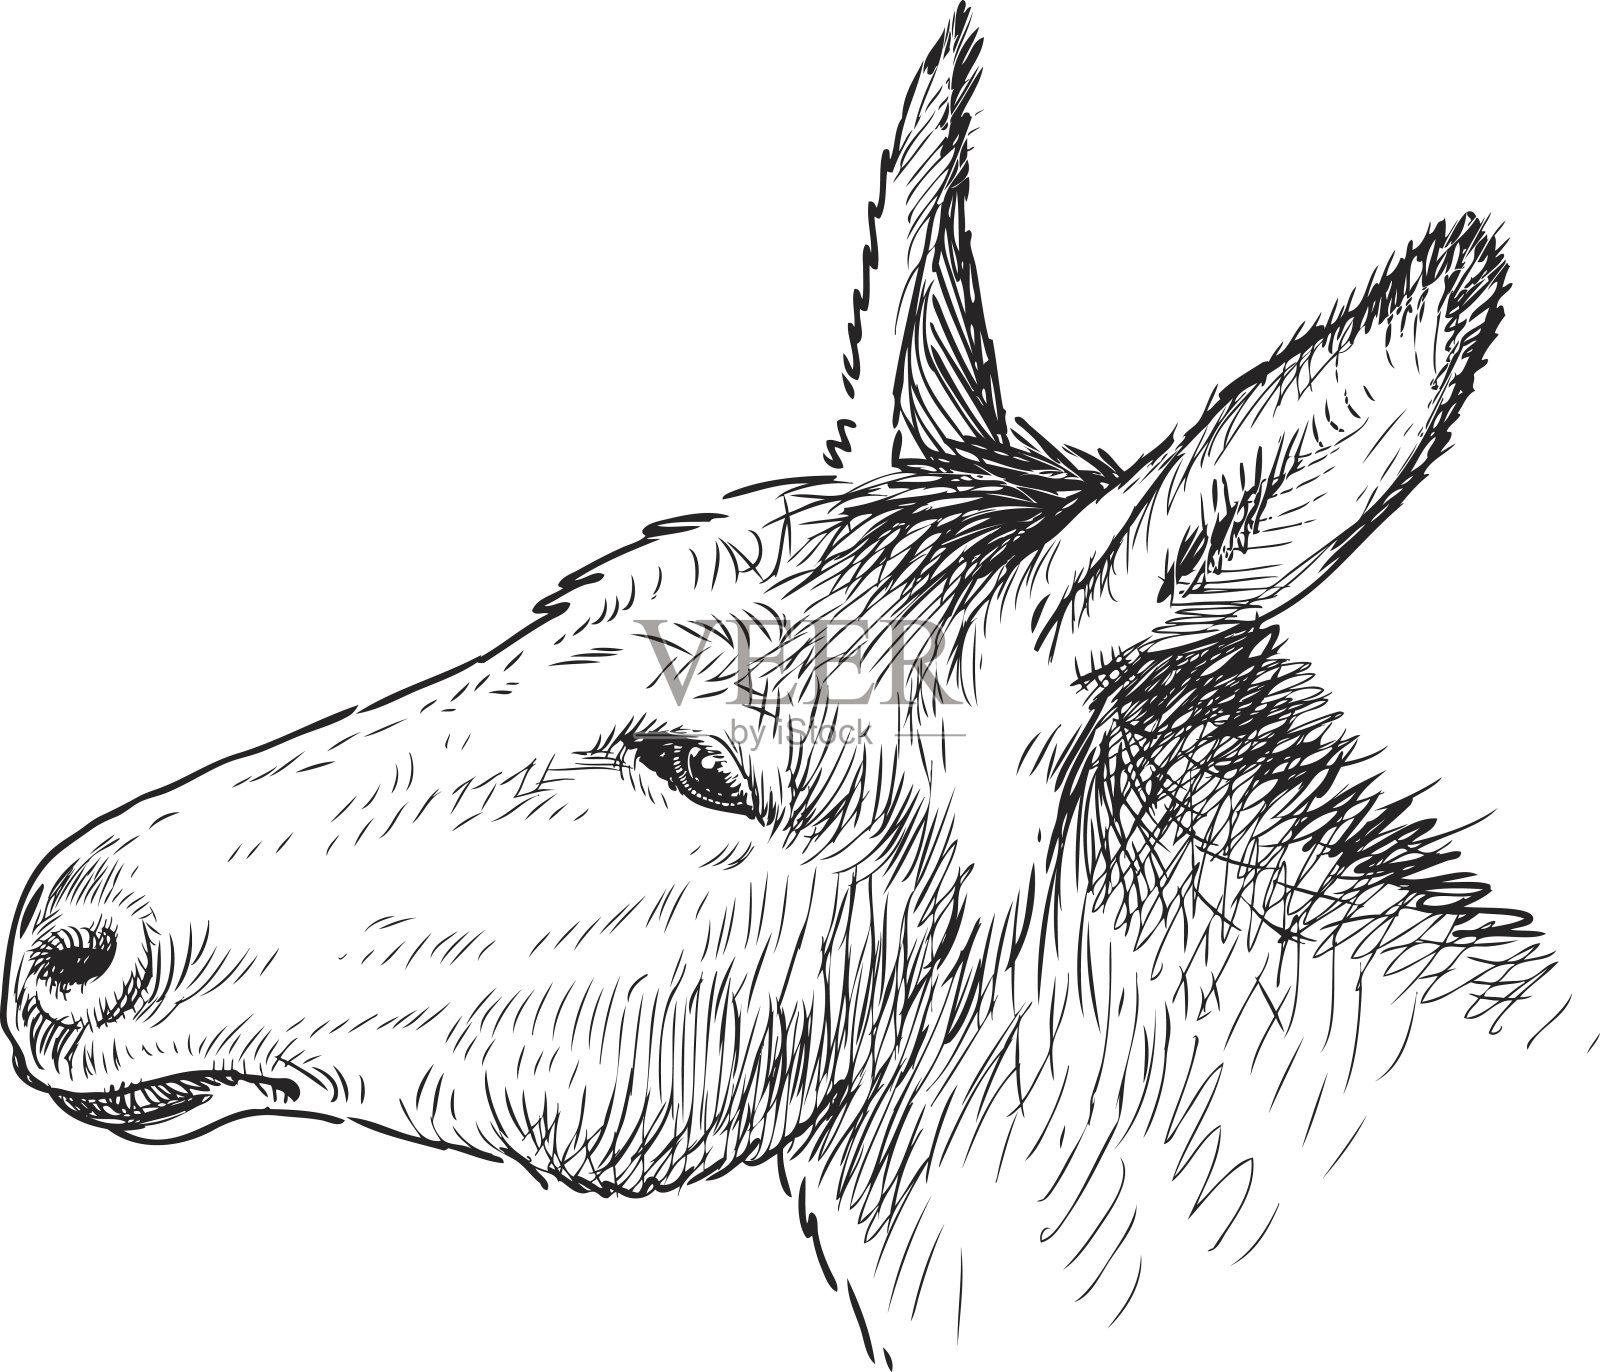 这是一头悲伤的驴的头插画图片素材